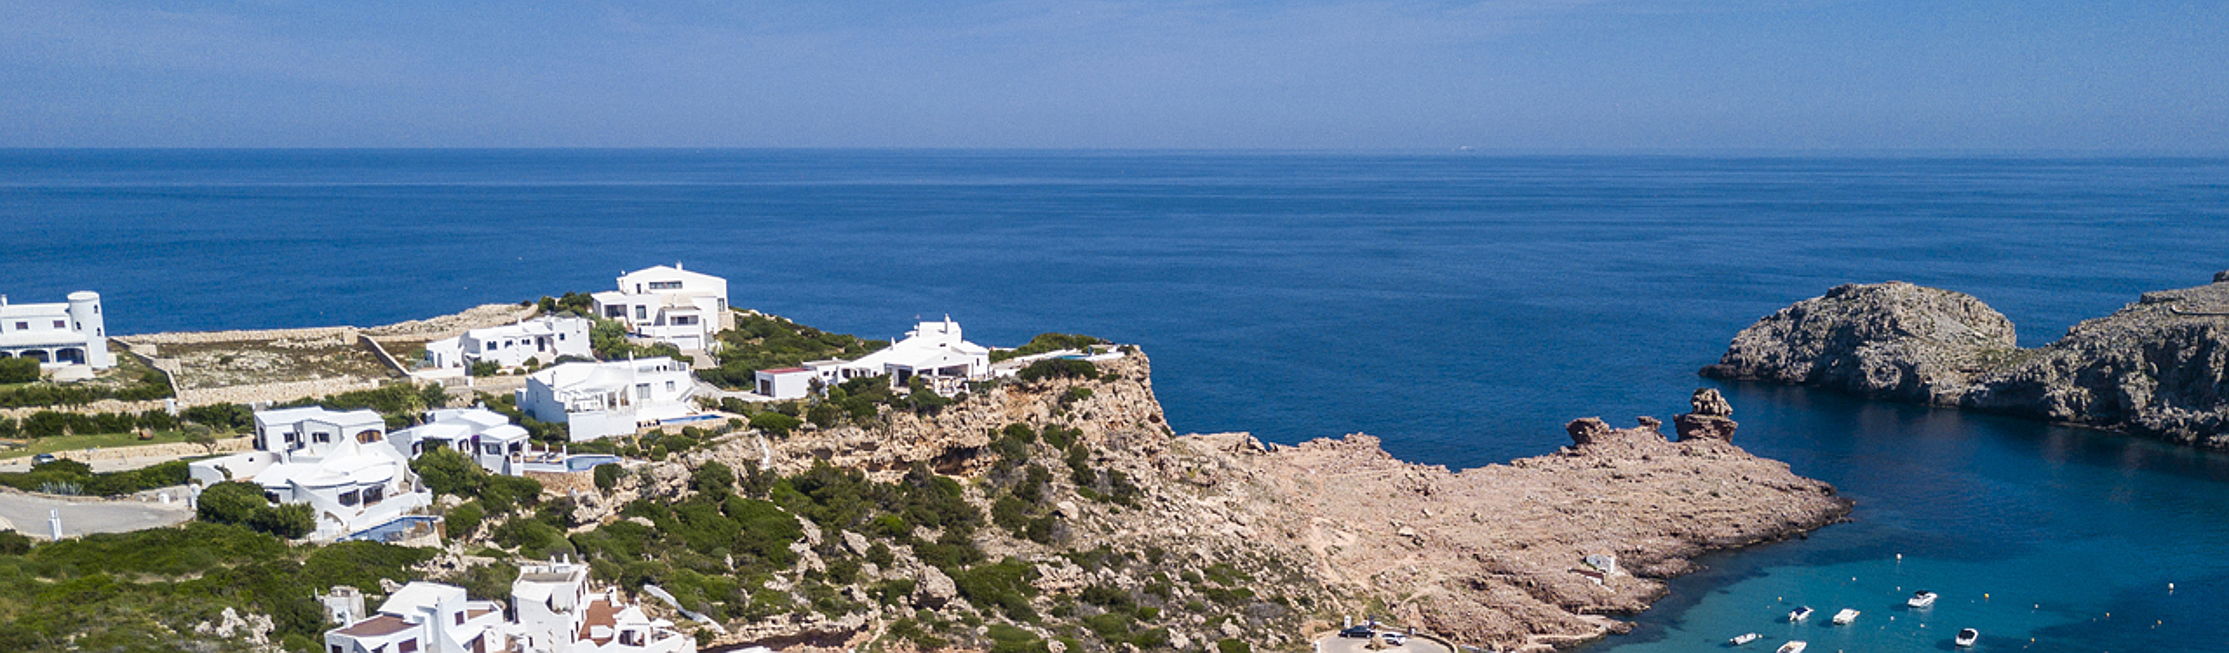  Mahón
- Kaufen sie eine Immobilie auf Menorca mit Engel & Völkers